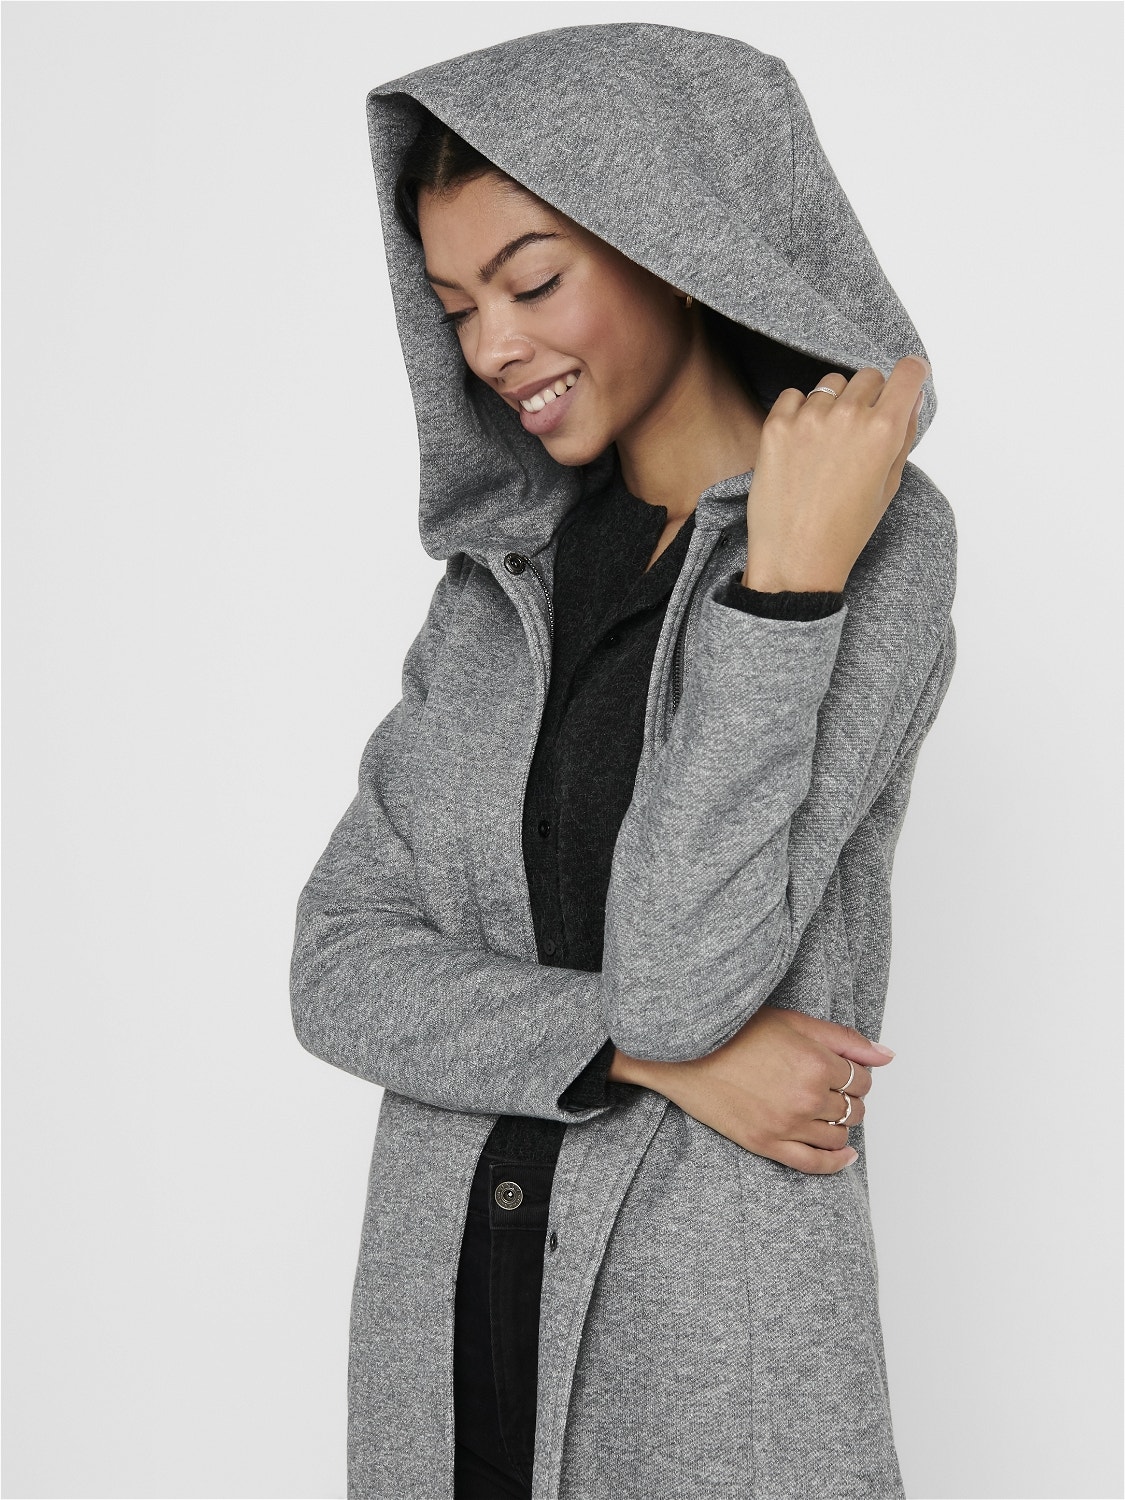 ONLY Coat with hood -Light Grey Melange - 15142911